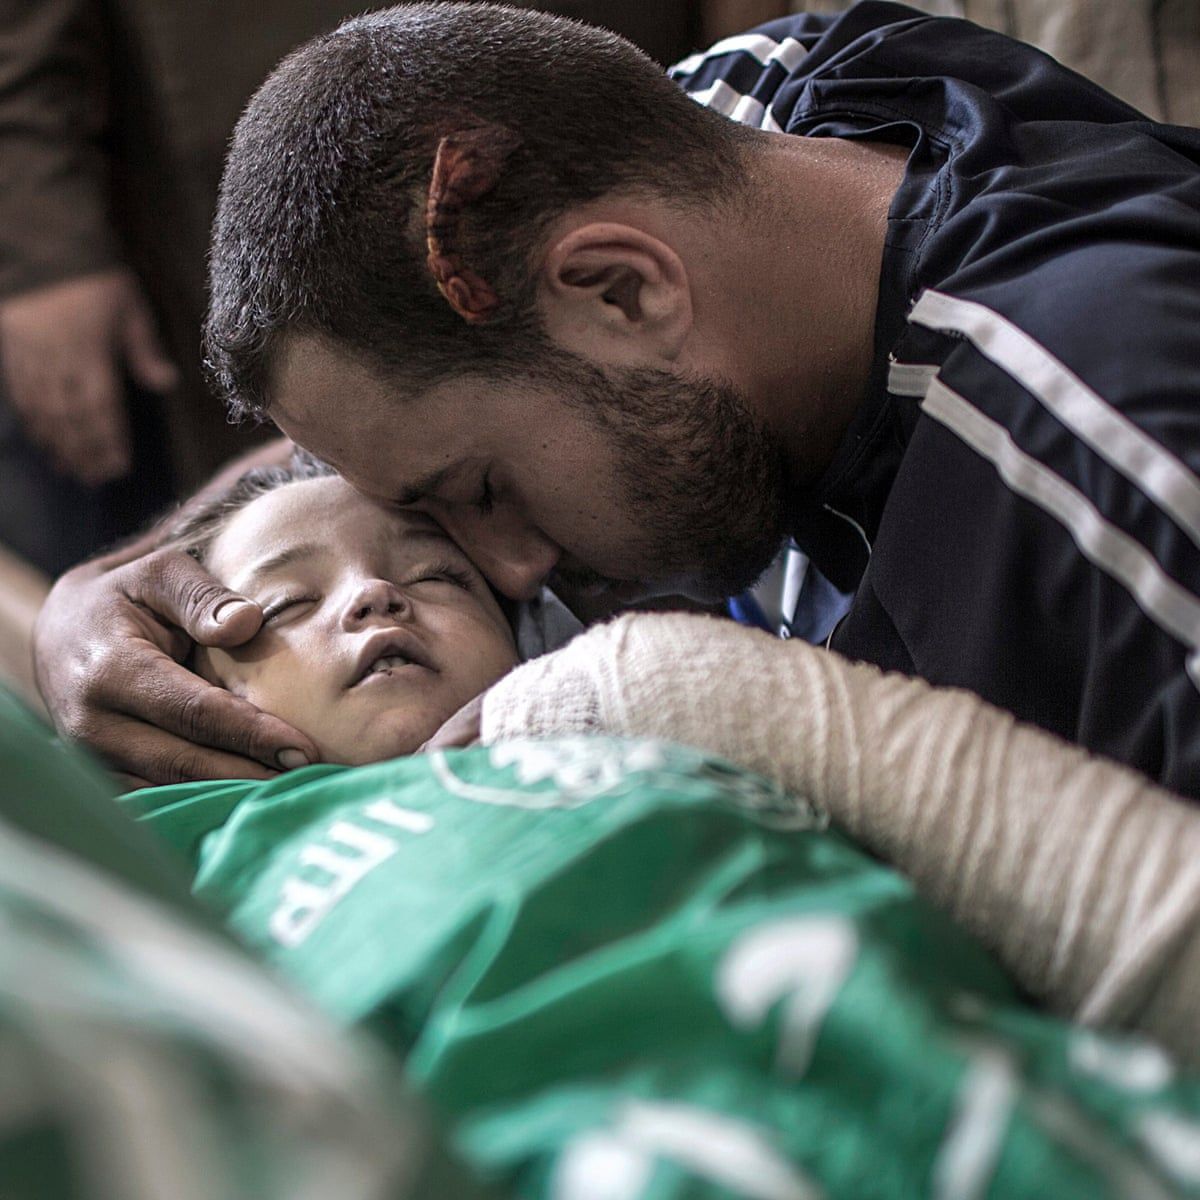 巴以军民冲突造成一名少年死亡 112名巴勒斯坦人受伤 - 2020年3月11日, 俄罗斯卫星通讯社